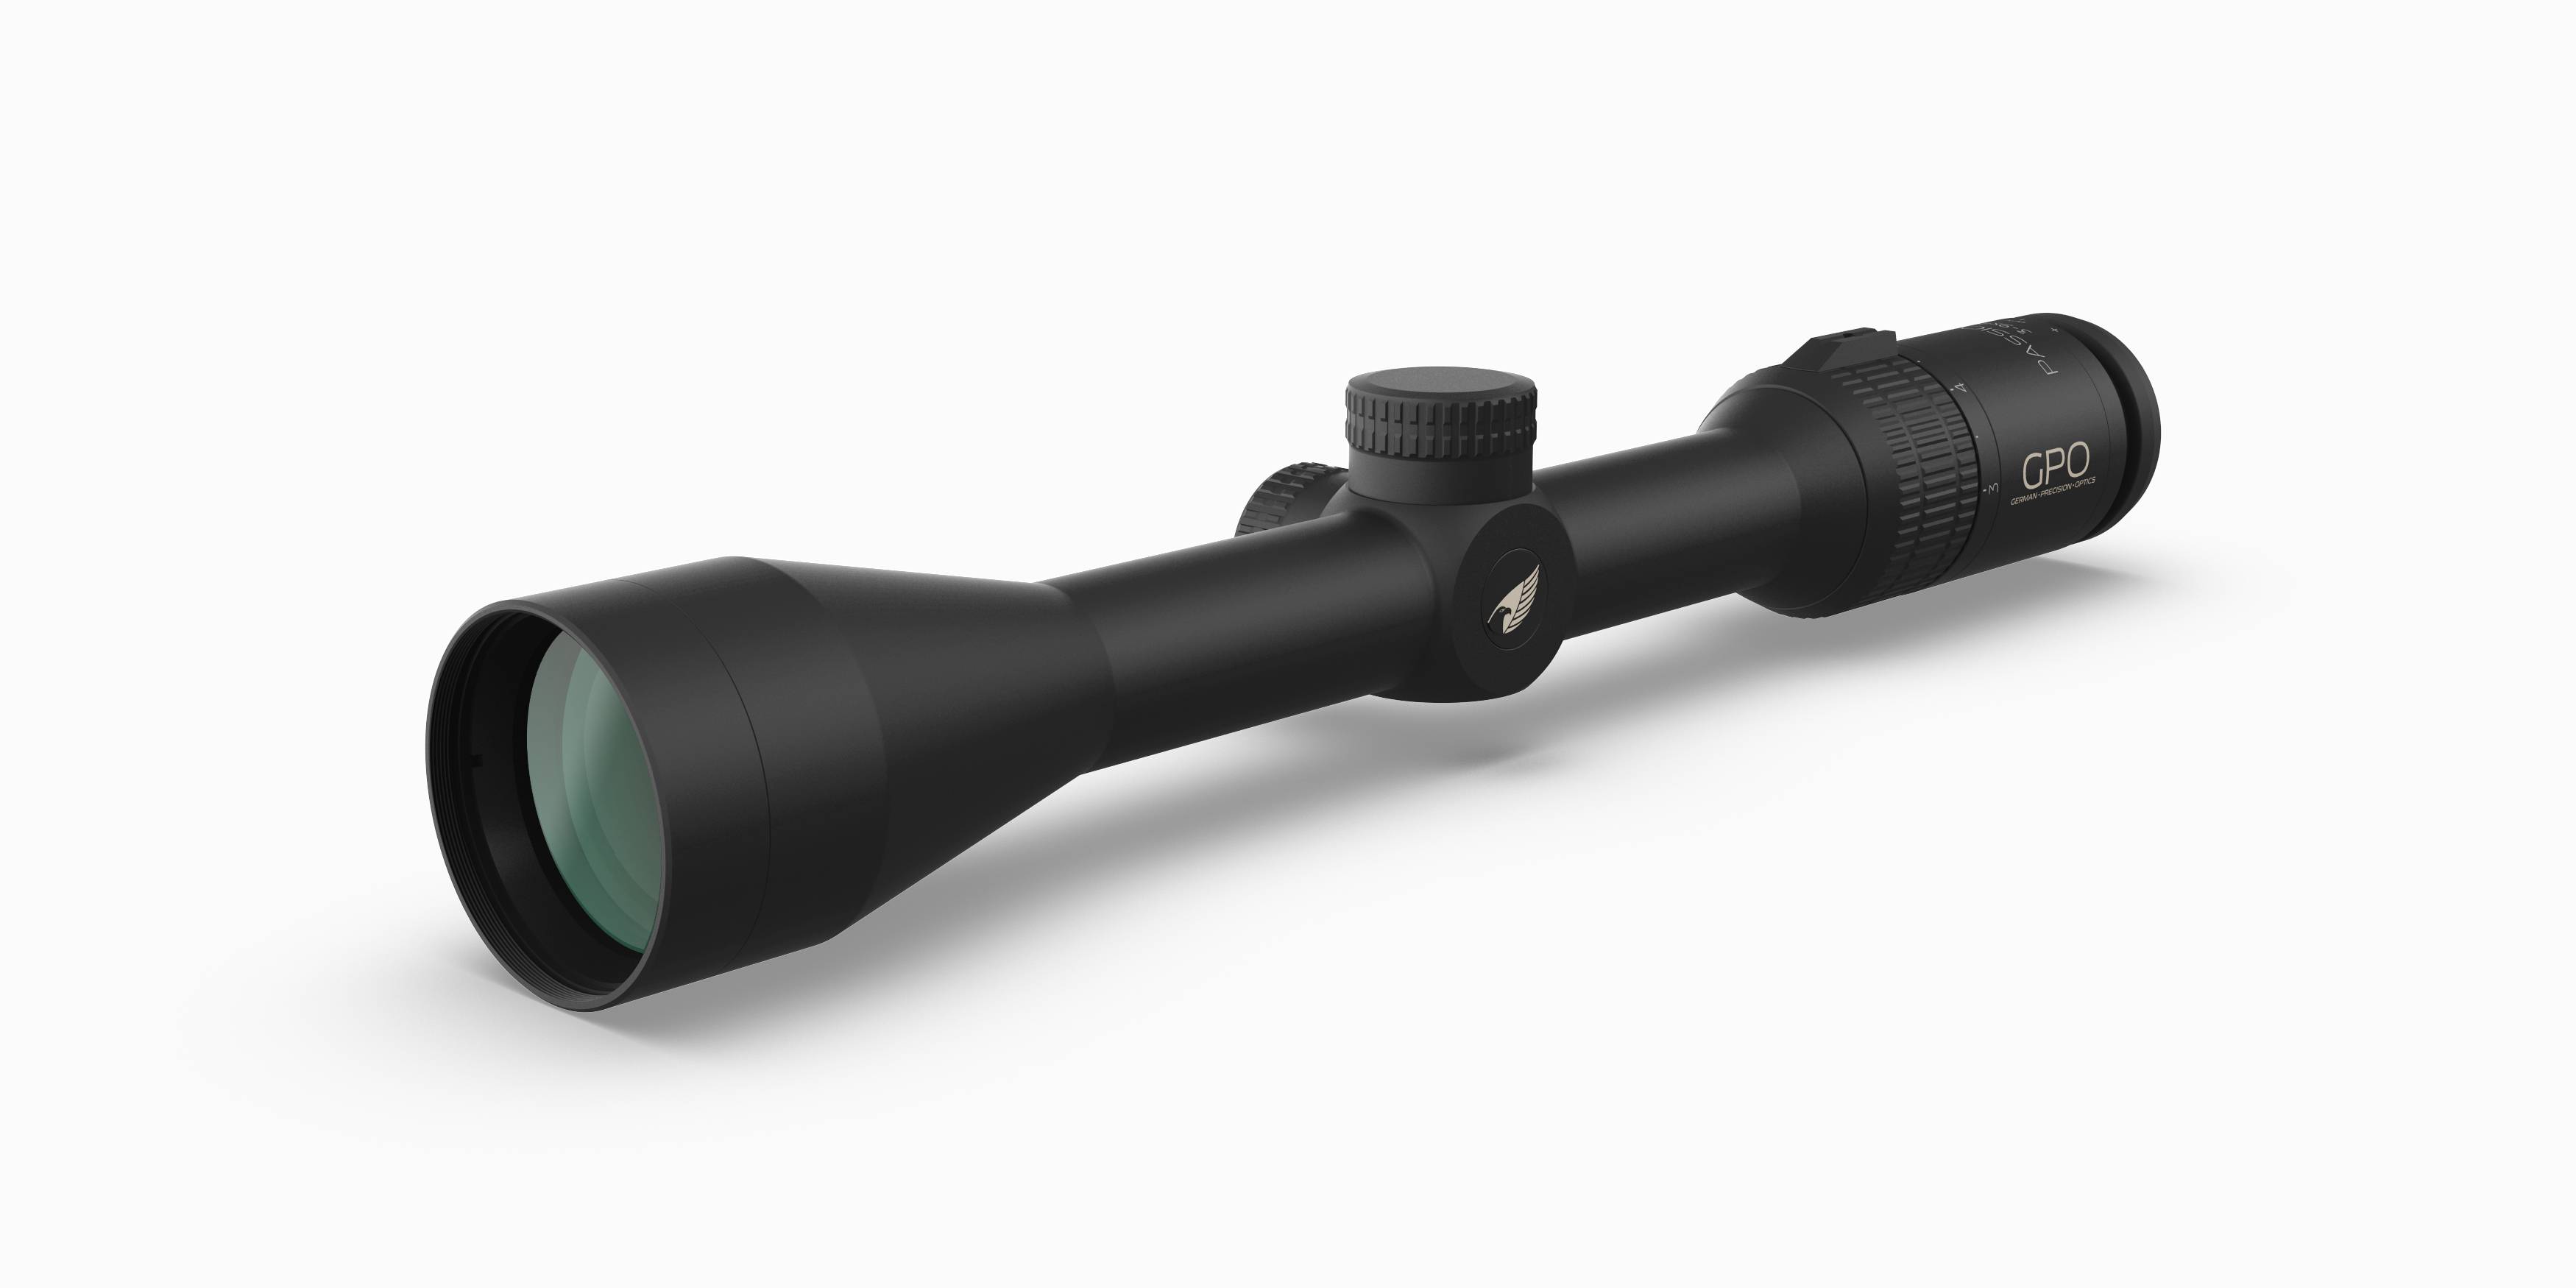 GPO PASSION 3X Riflescope 3-9x42, 1" tube, 1/4MOA, Plex reticle